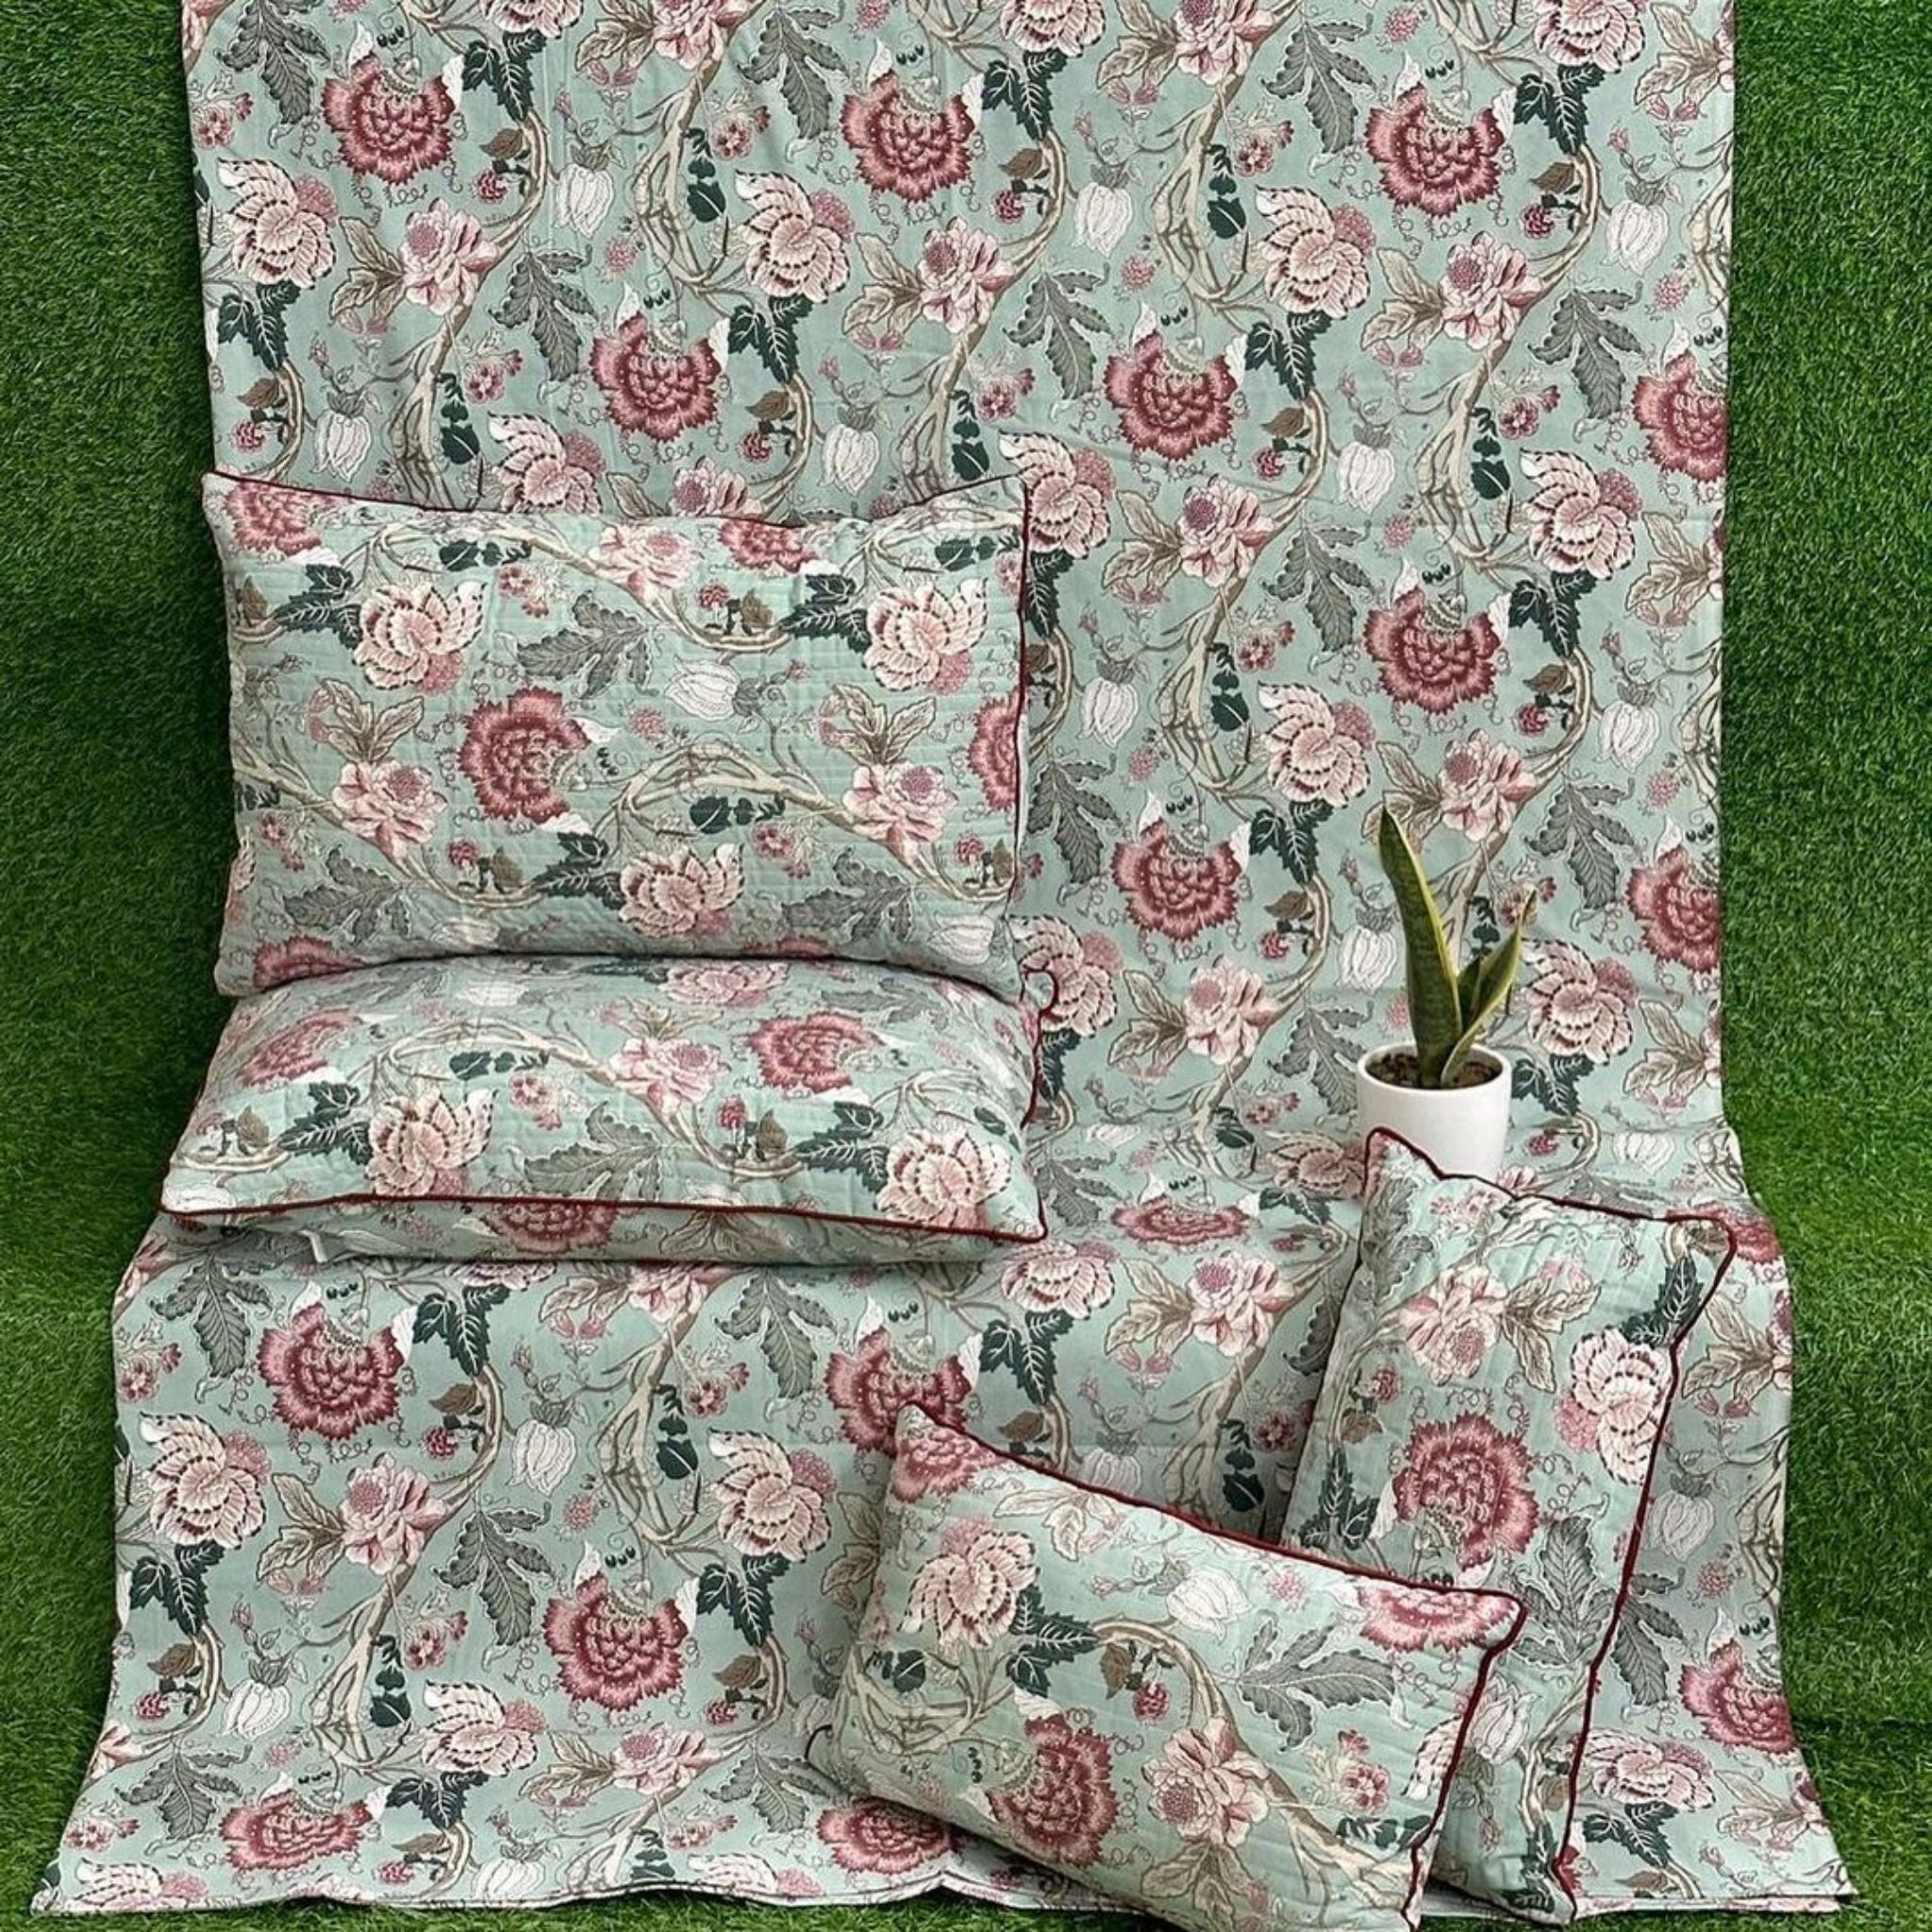 Anokhi 5pc Cotton Bedding Set